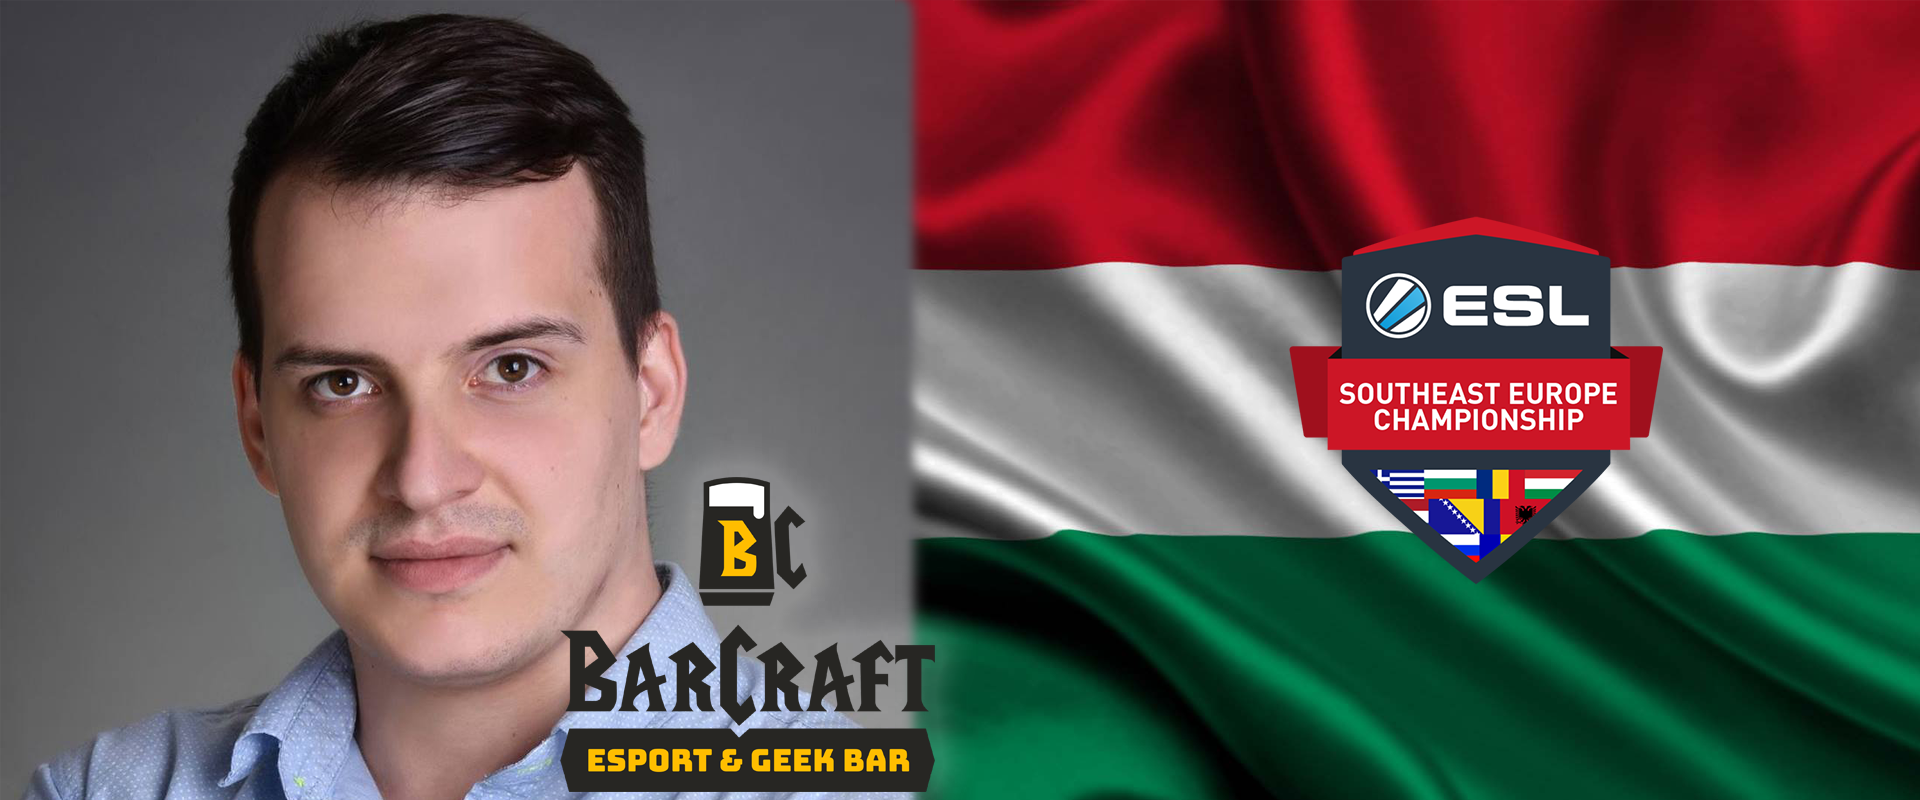 Első online versenyén SEC nagydöntőbe jutott mcsongi92, a BarCraft Szeged kiváló játékosa